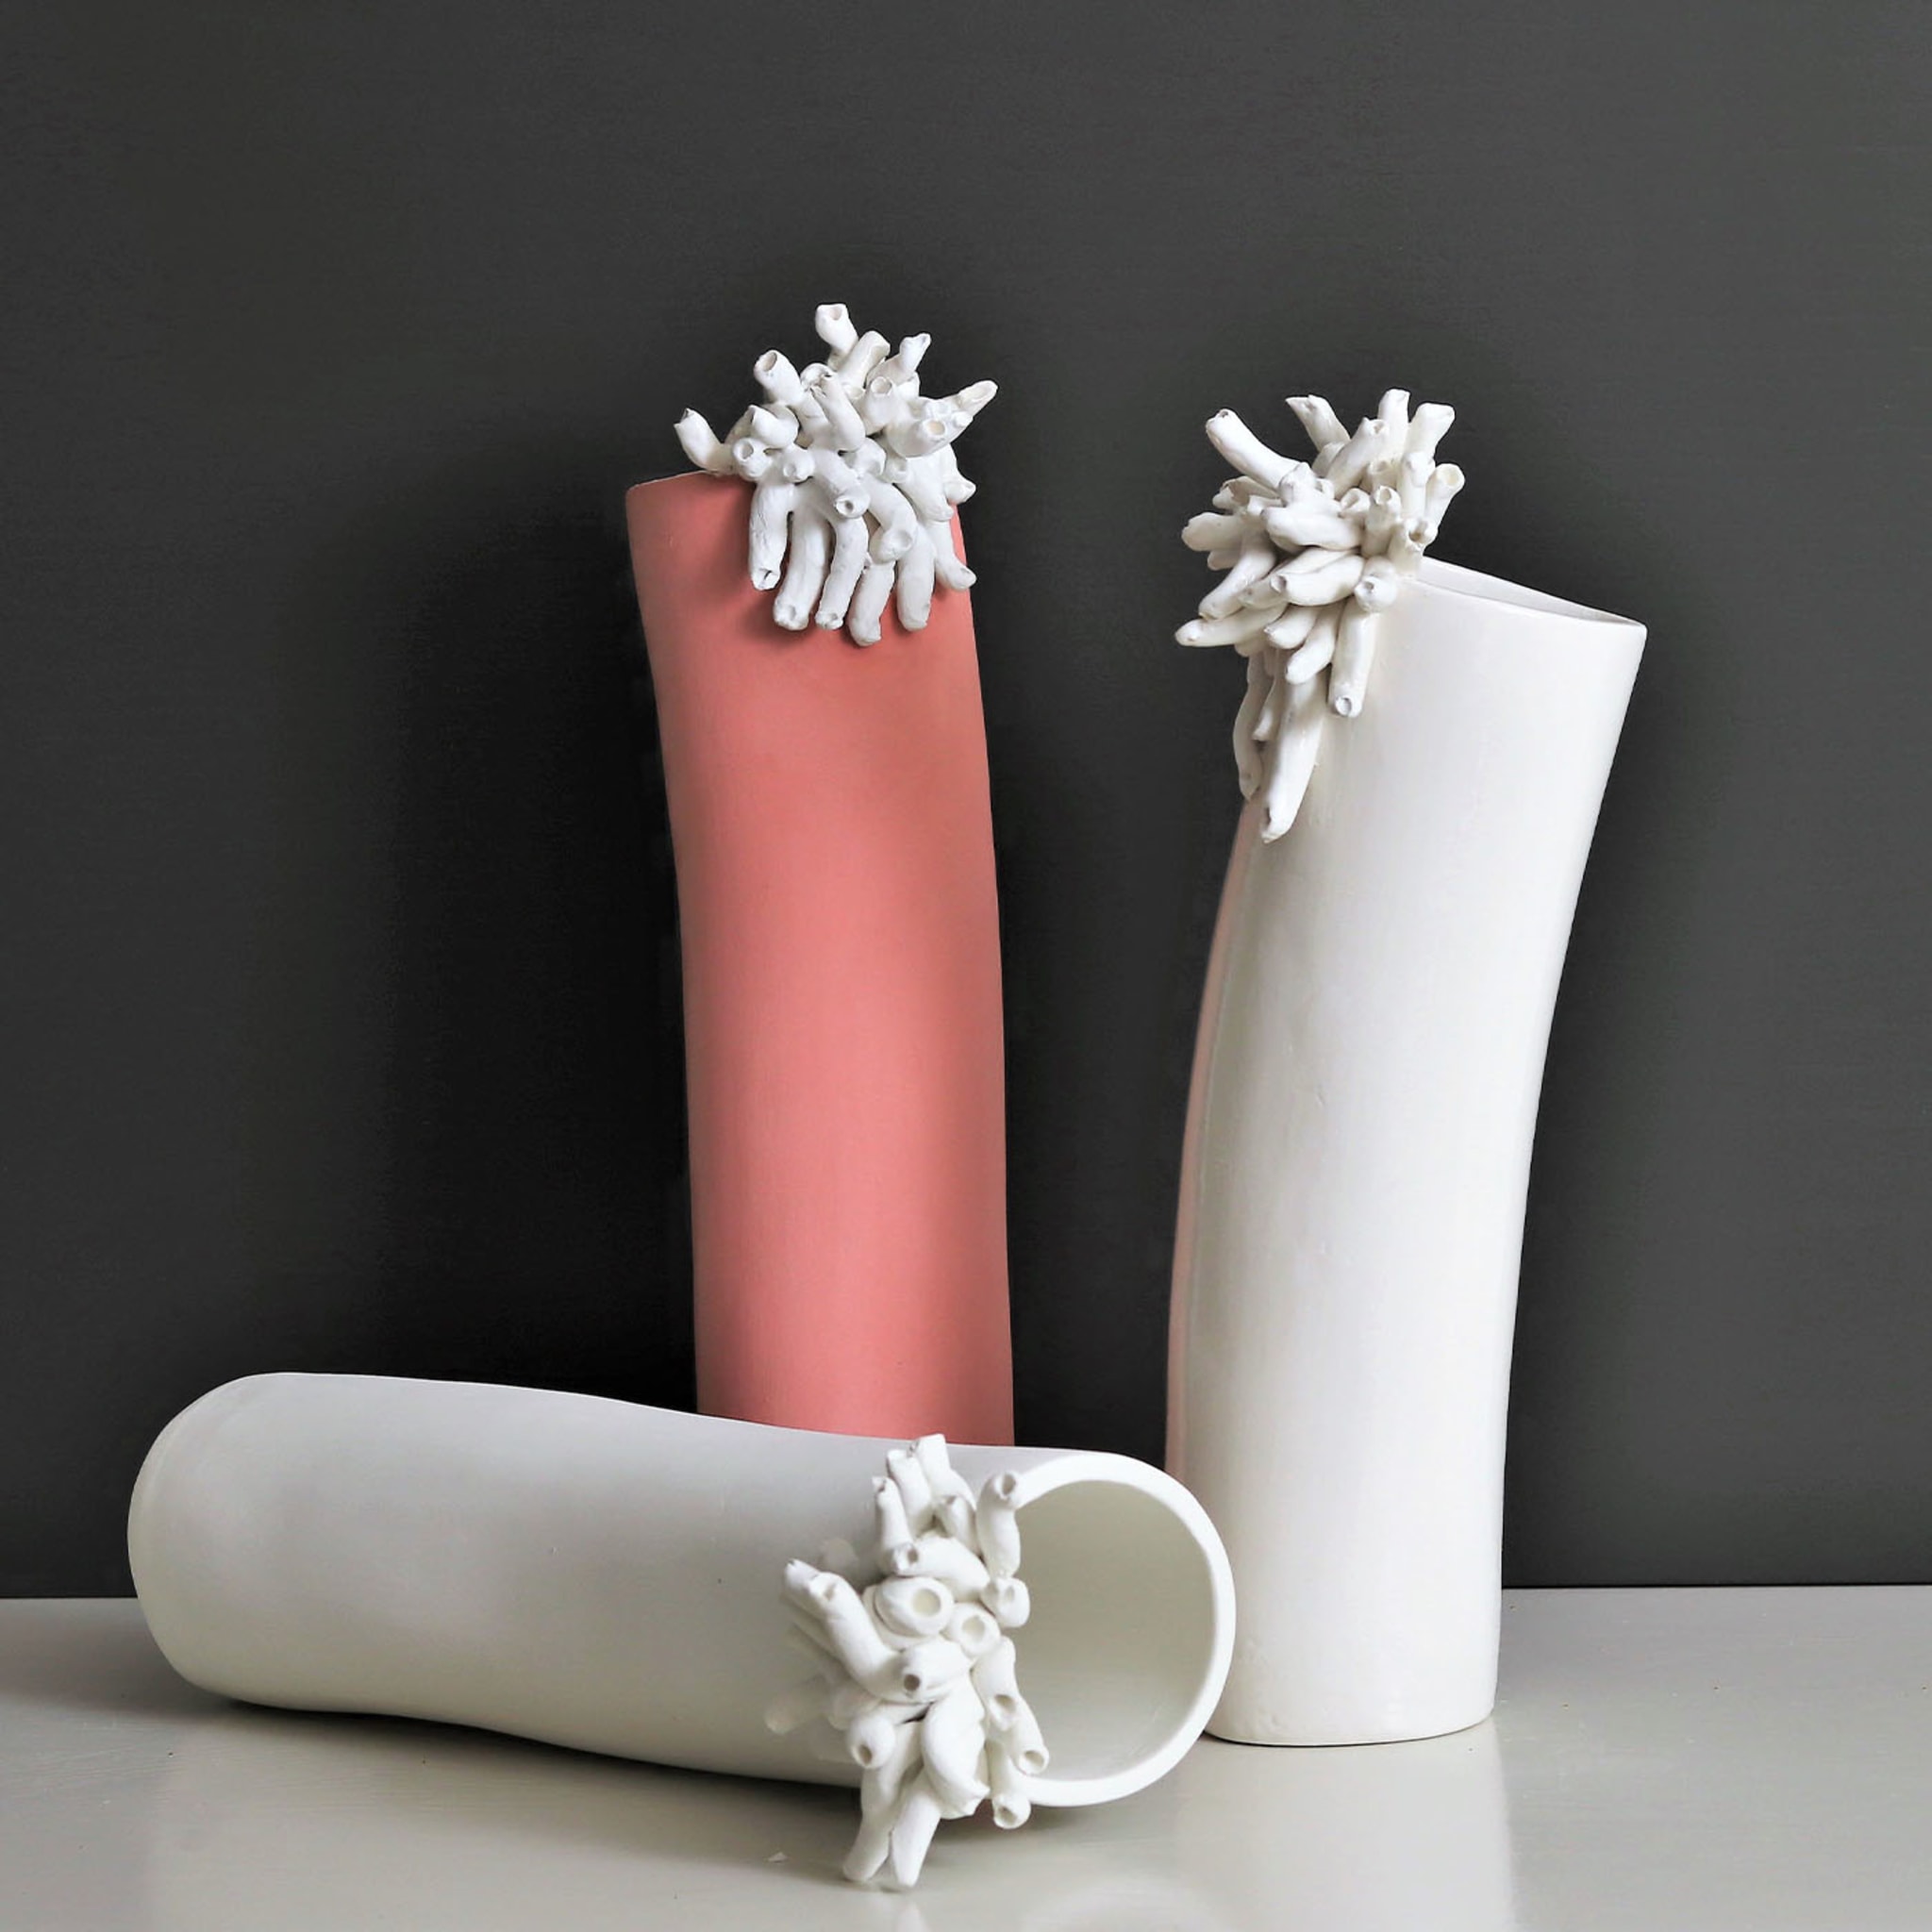 Anemoni Glossy White Vase - Alternative view 1